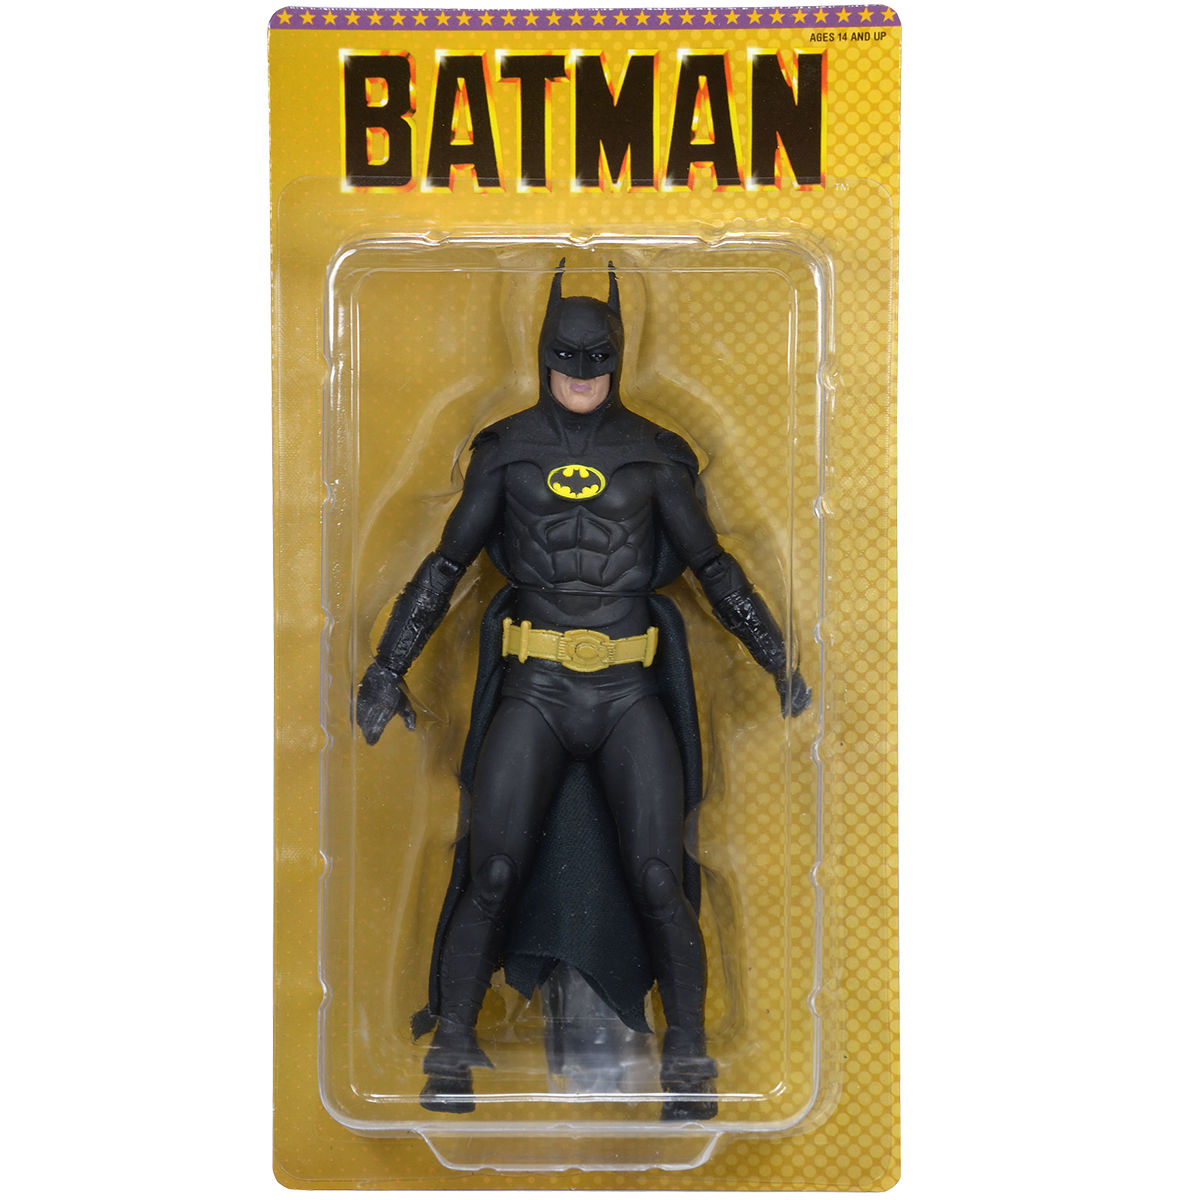 Batman-25th-Anniversary-Figure-at-TRU.jpg